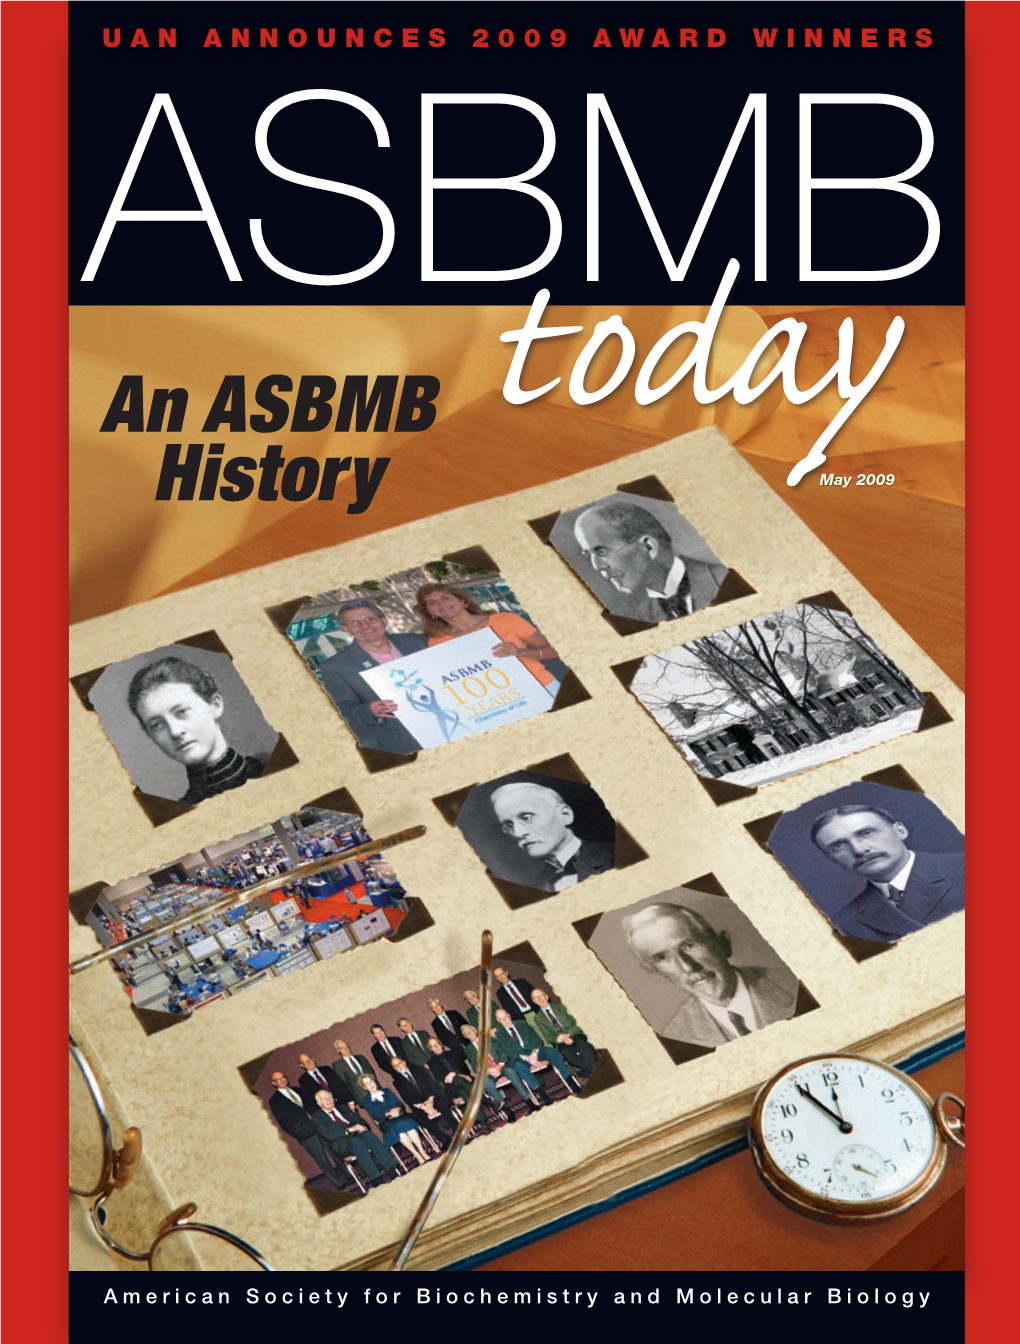 An ASBMB History May 2009